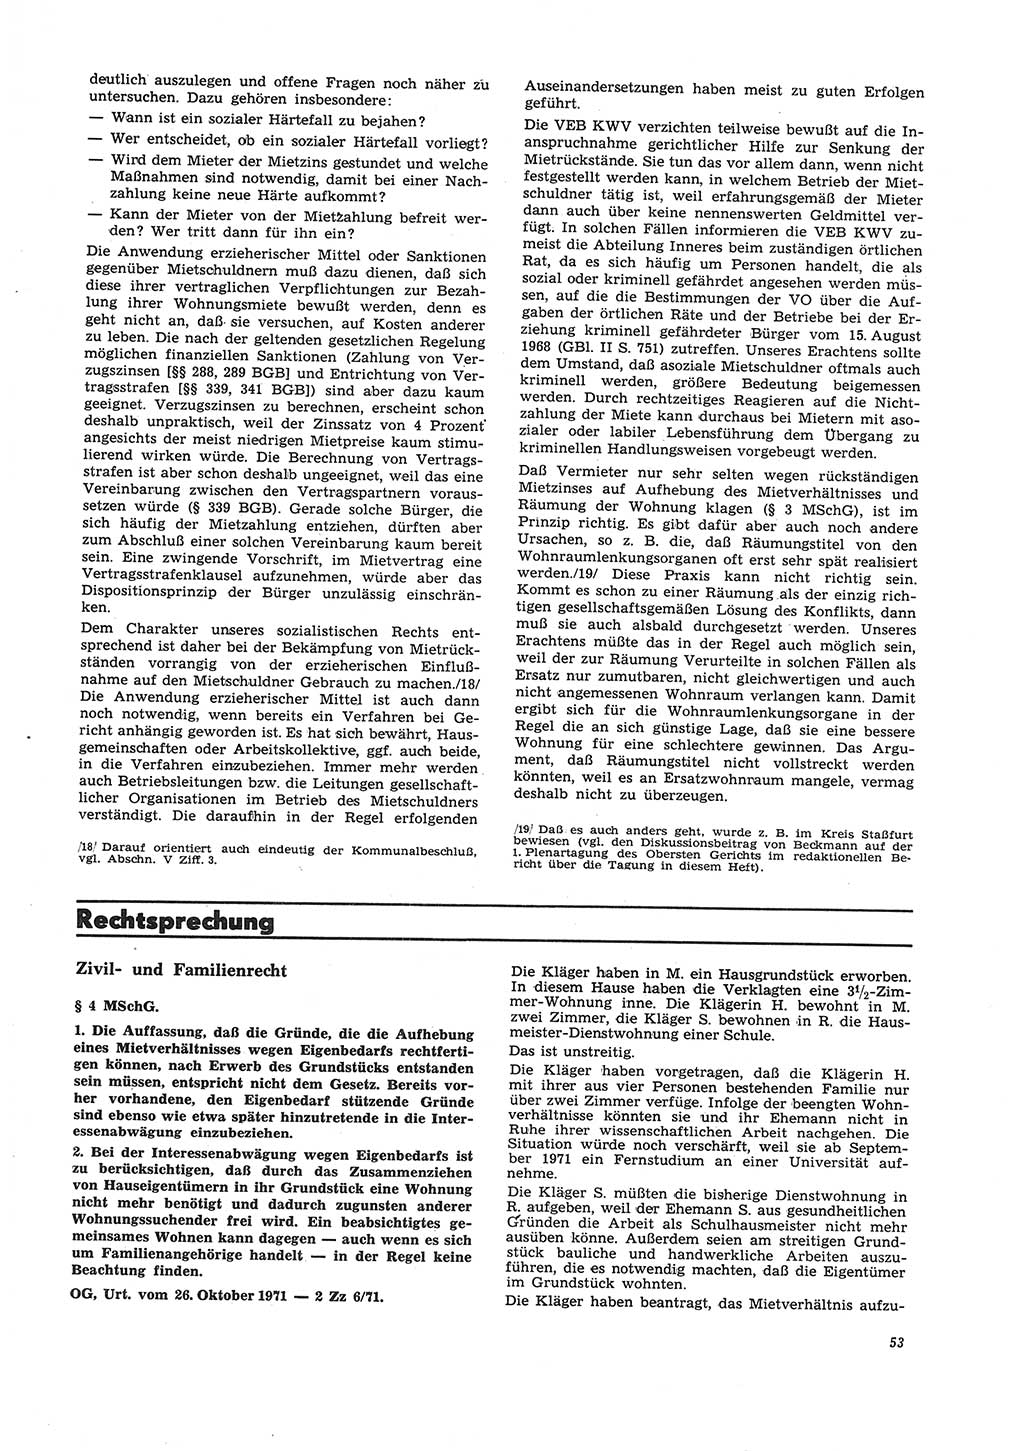 Neue Justiz (NJ), Zeitschrift für Recht und Rechtswissenschaft [Deutsche Demokratische Republik (DDR)], 26. Jahrgang 1972, Seite 53 (NJ DDR 1972, S. 53)